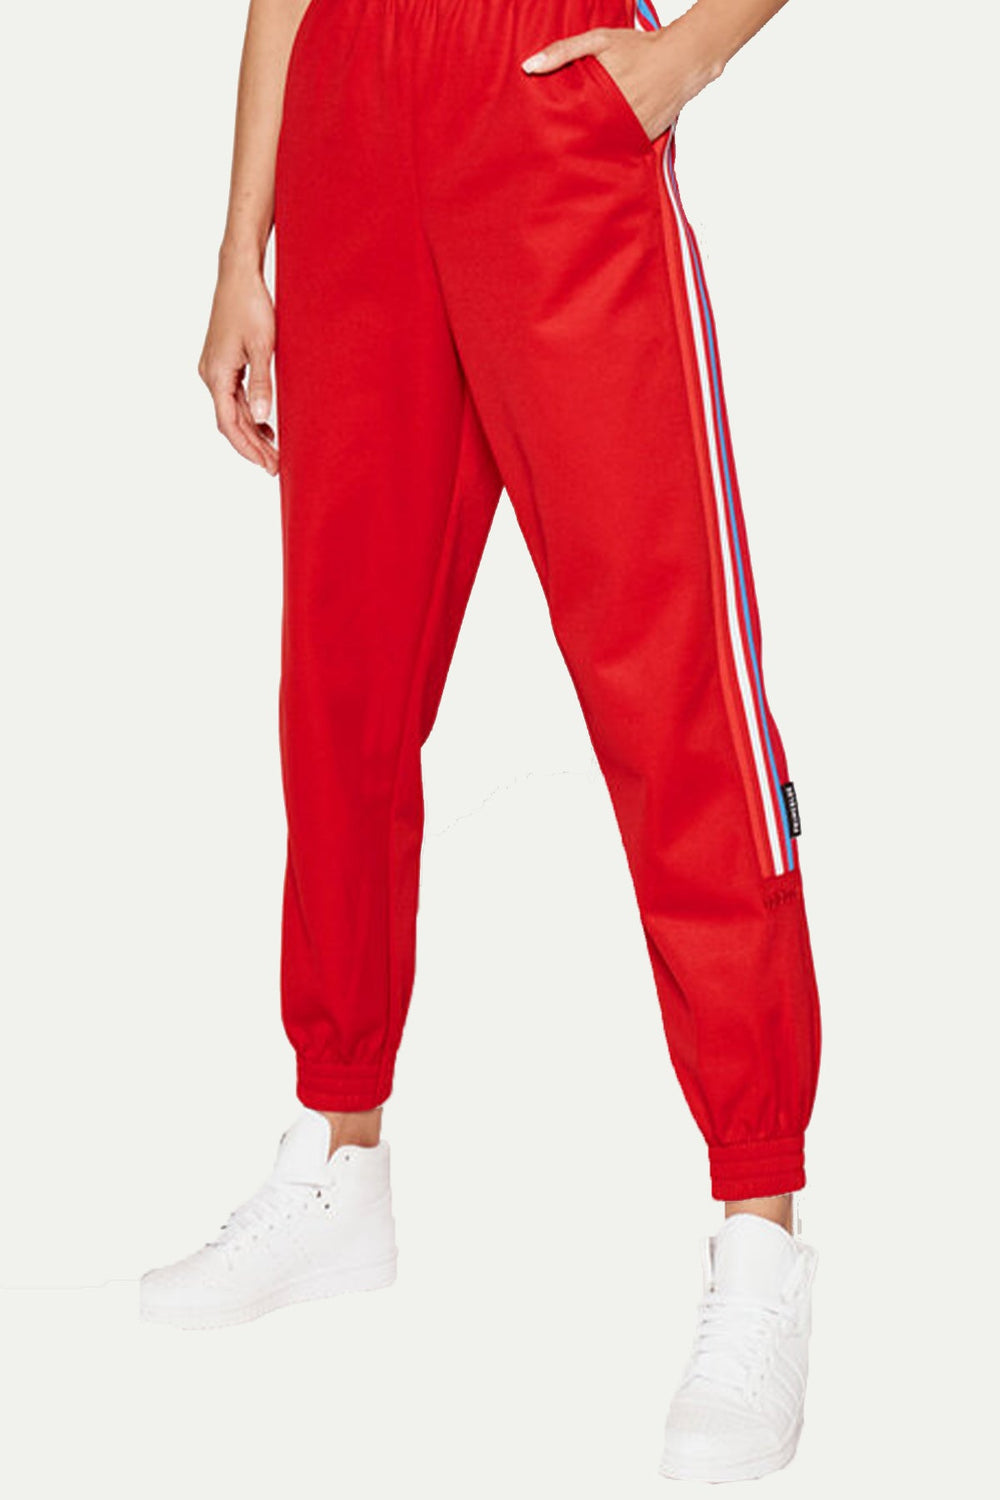 מכנסי TRACKPANT בצבע אדום - Adidas